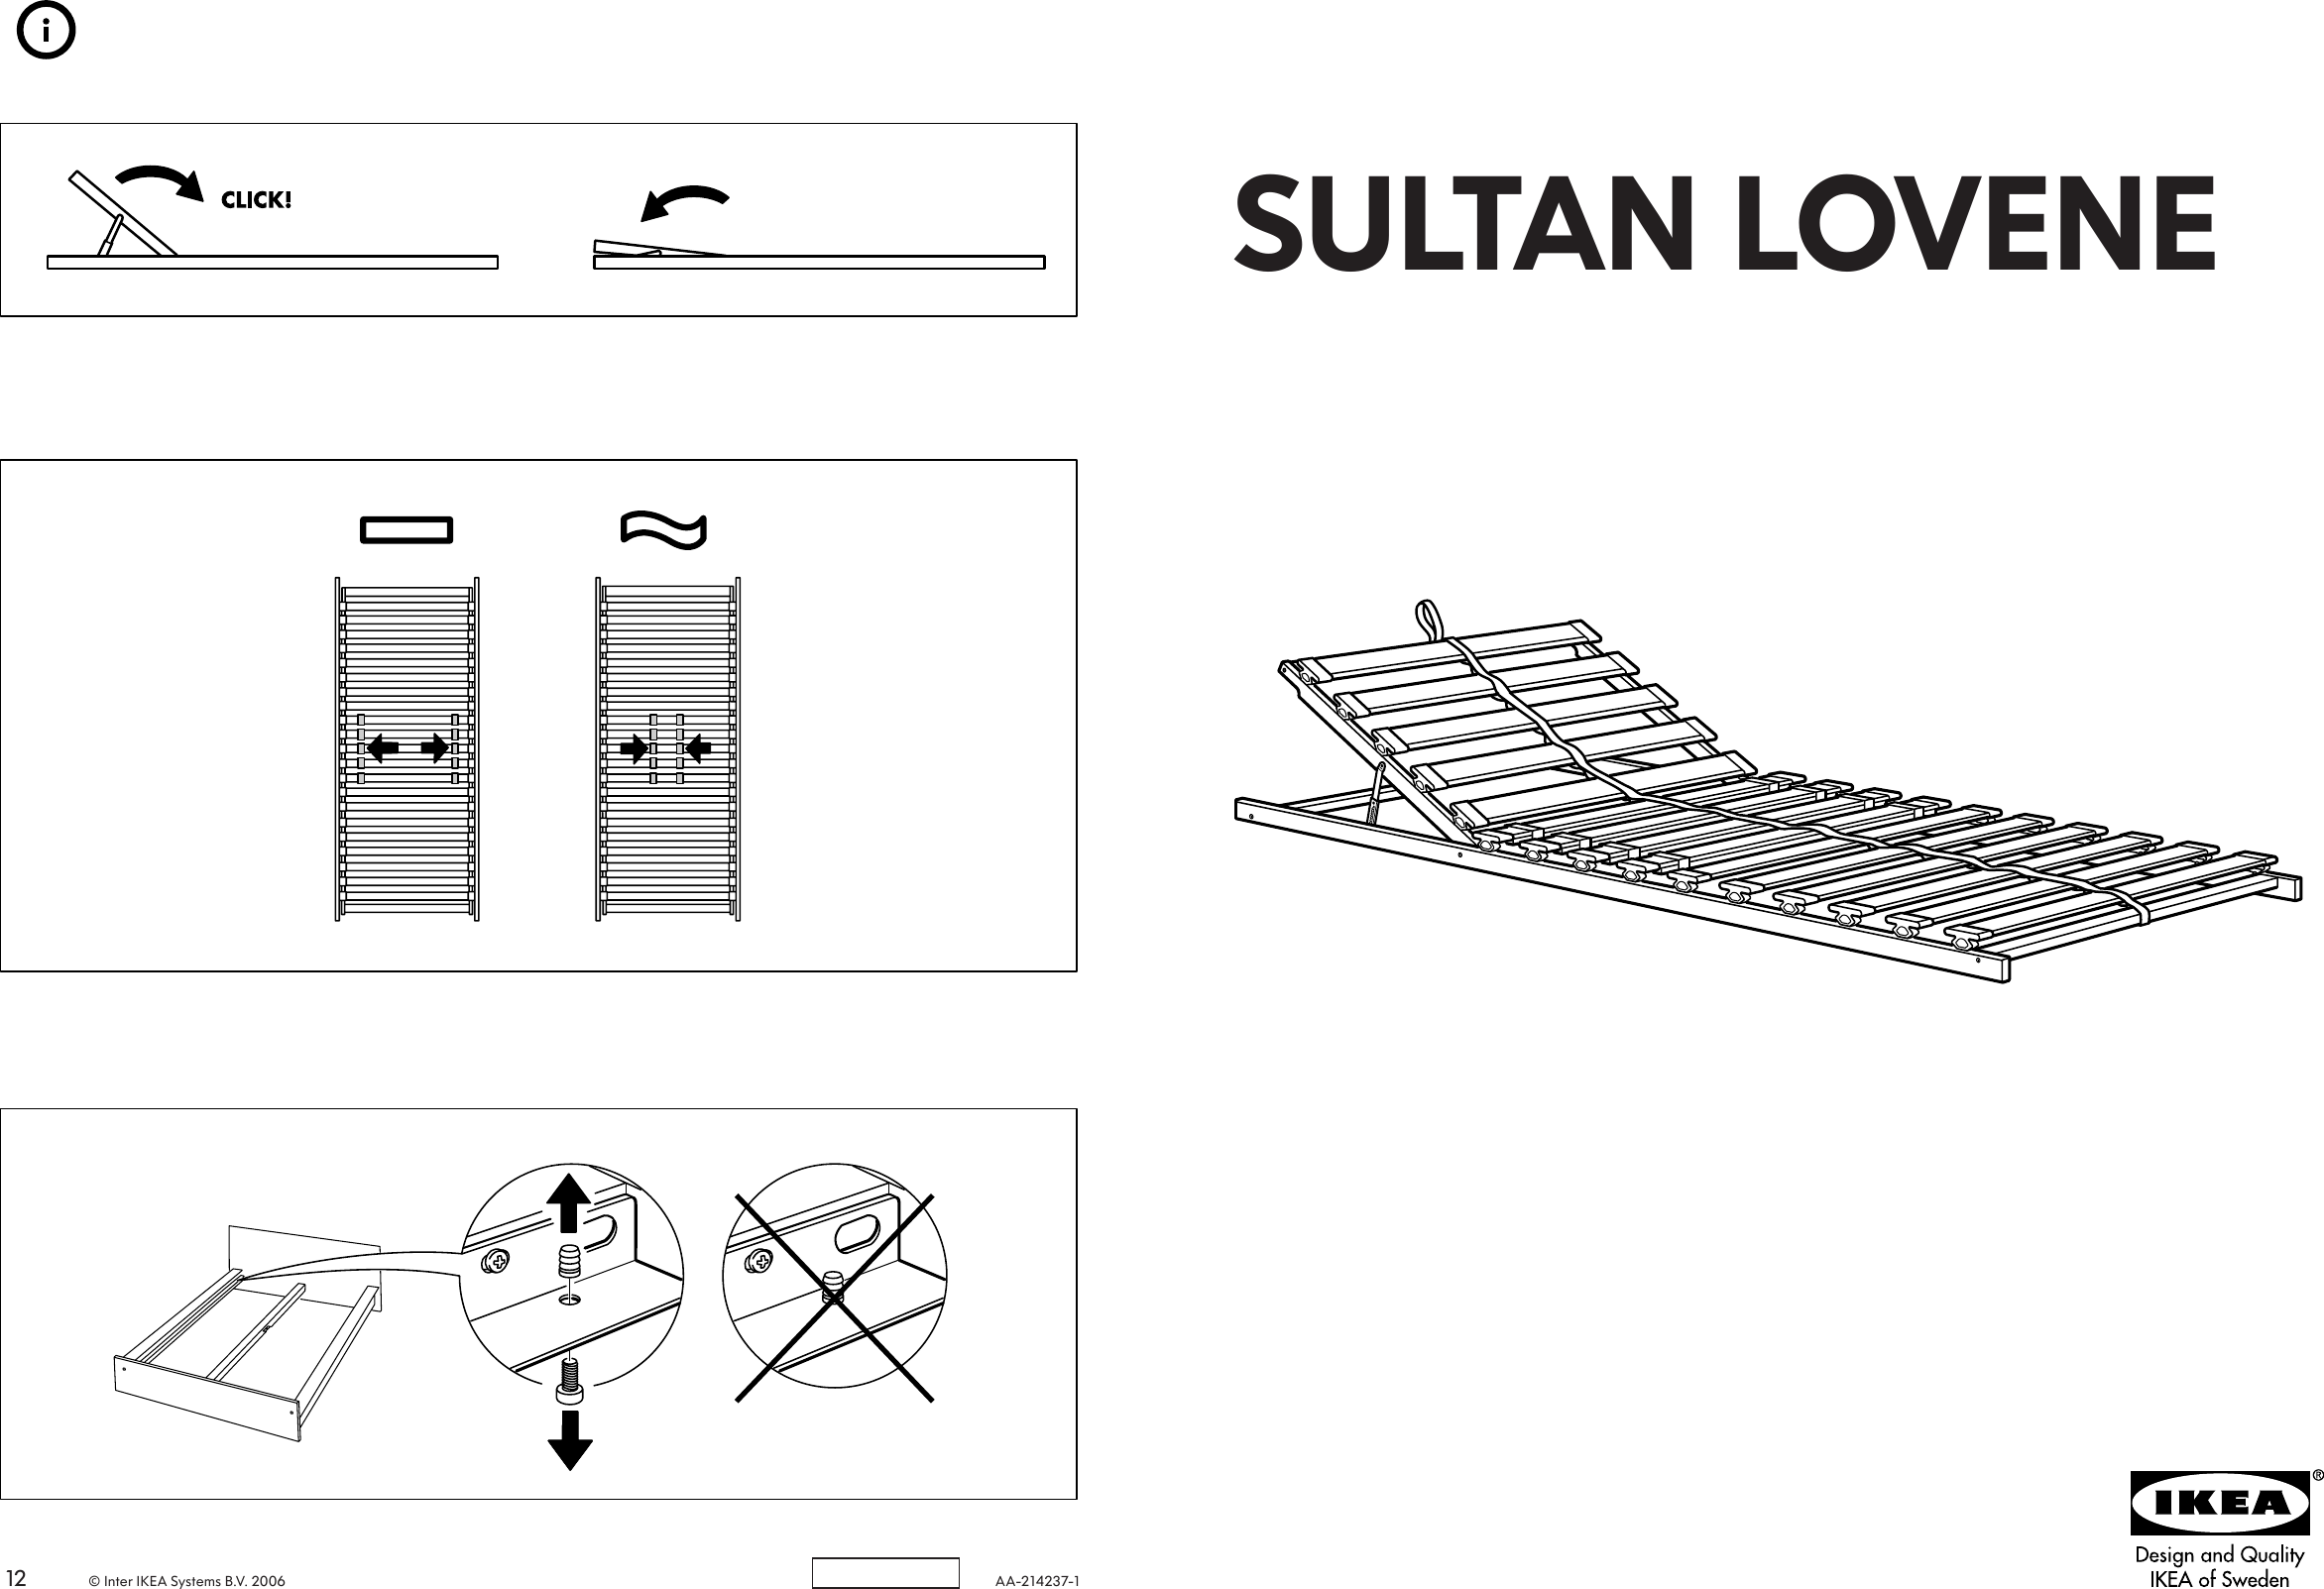 Ikea Sultan Lovene Slatted Bed Base, Ikea Slatted Bed Base Twin